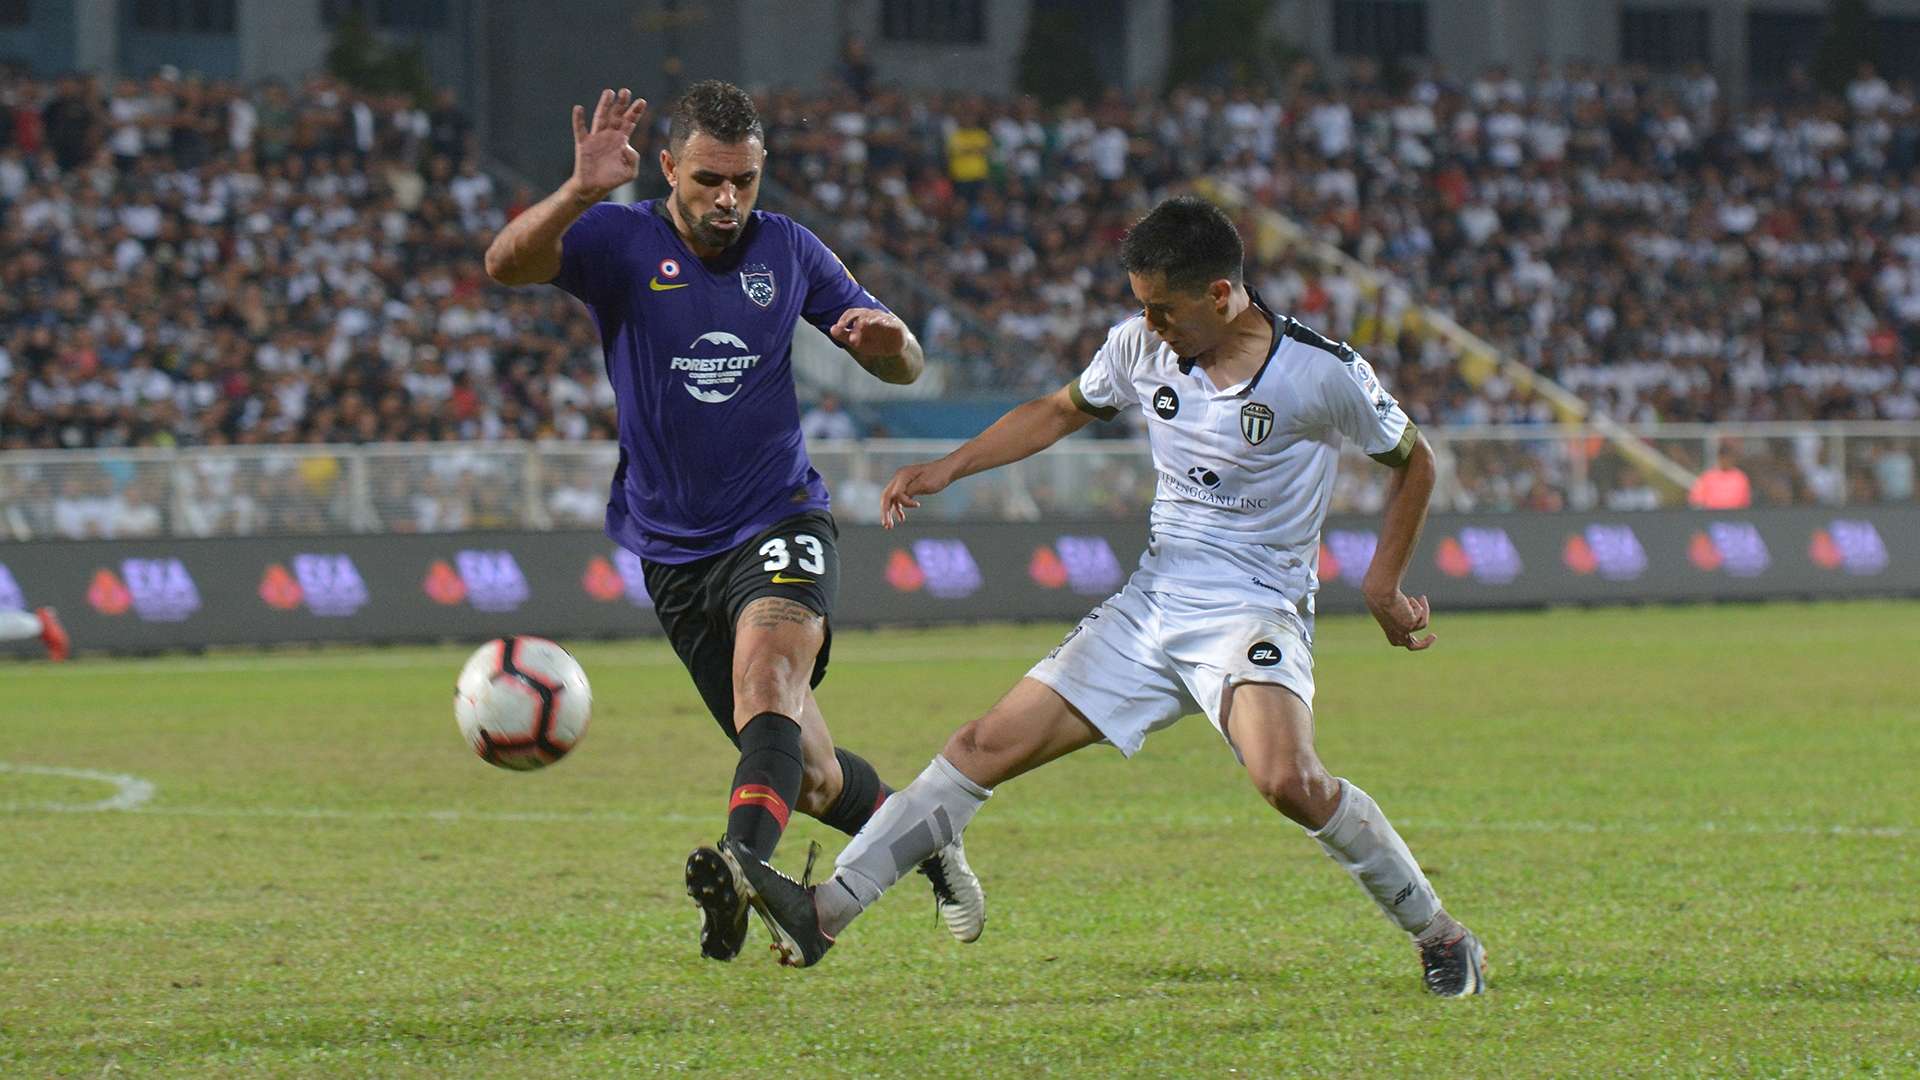 Mauricio dos Santos, Terengganu FC v Johor Darul Ta'zim, Malaysia Super League